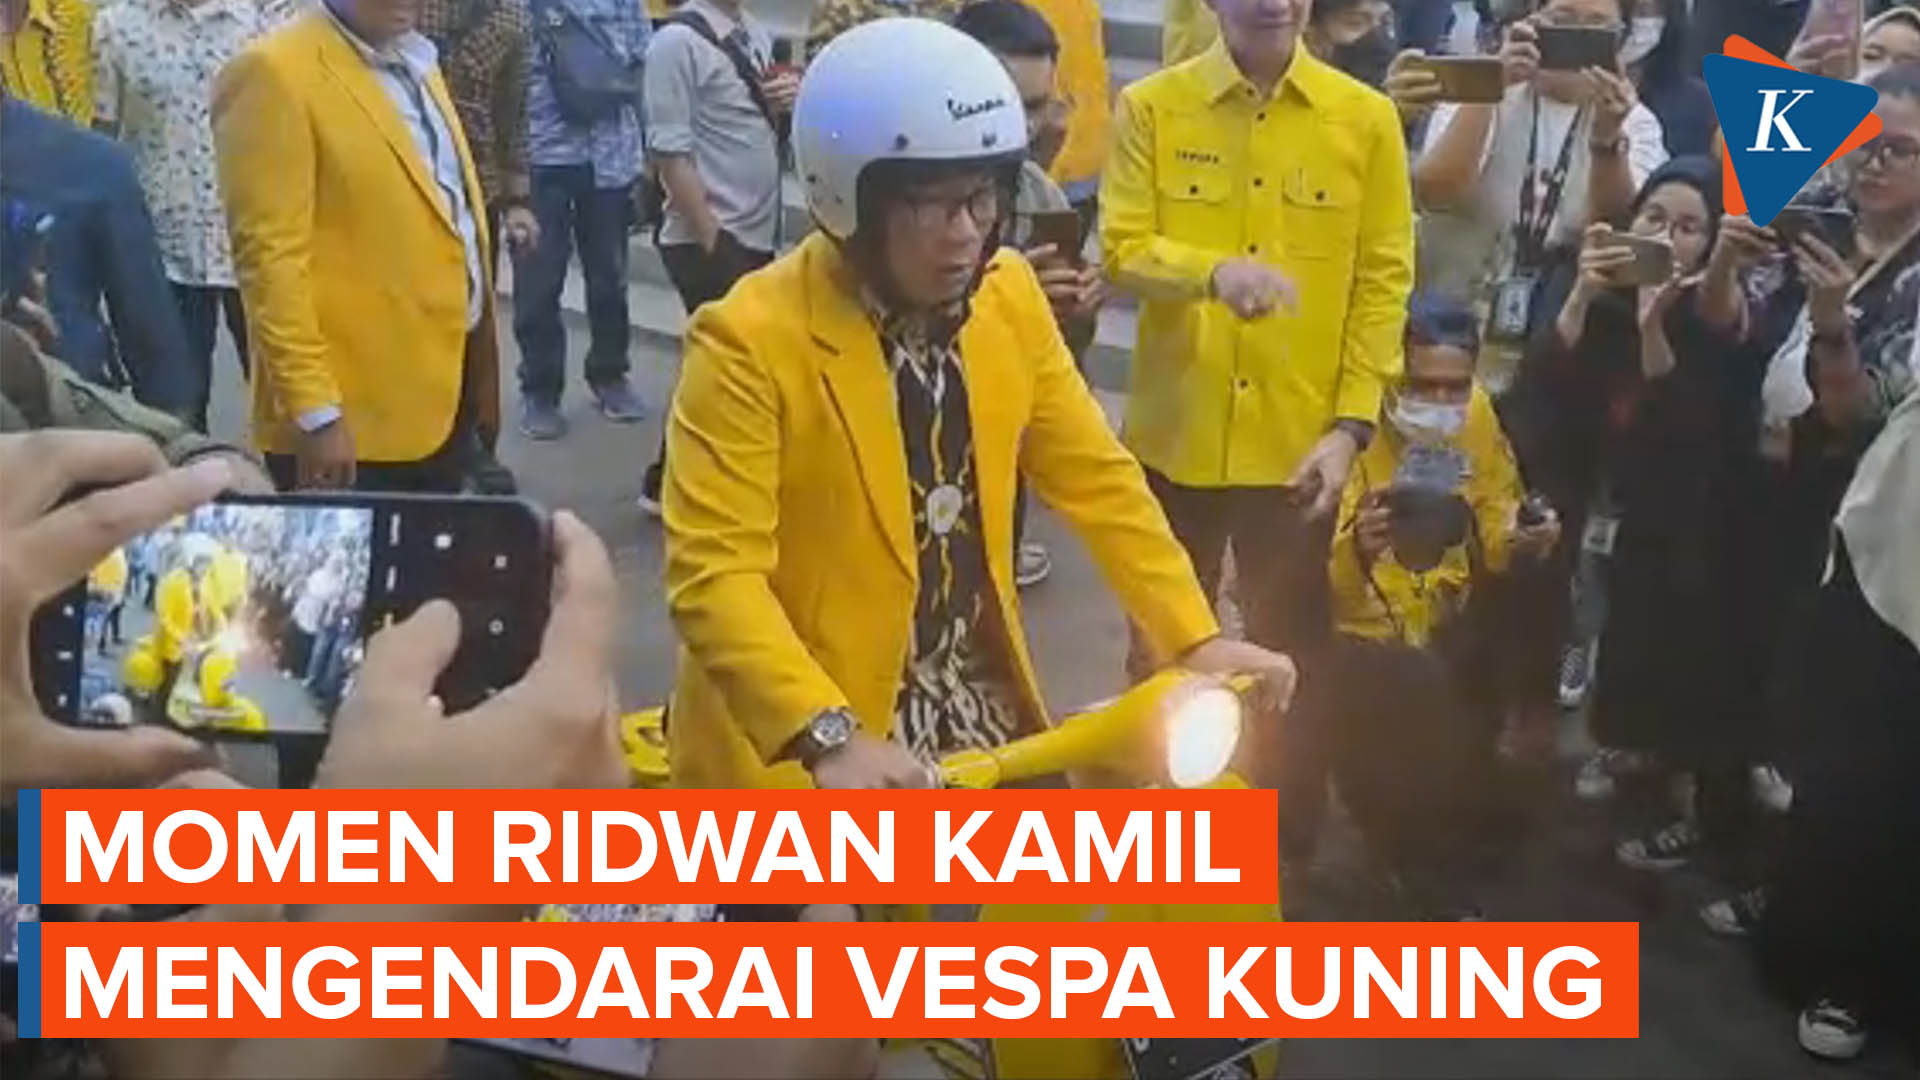 Momen Ridwan Kamil Tinggalkan Kantor Golkar Naik Vespa Kuning